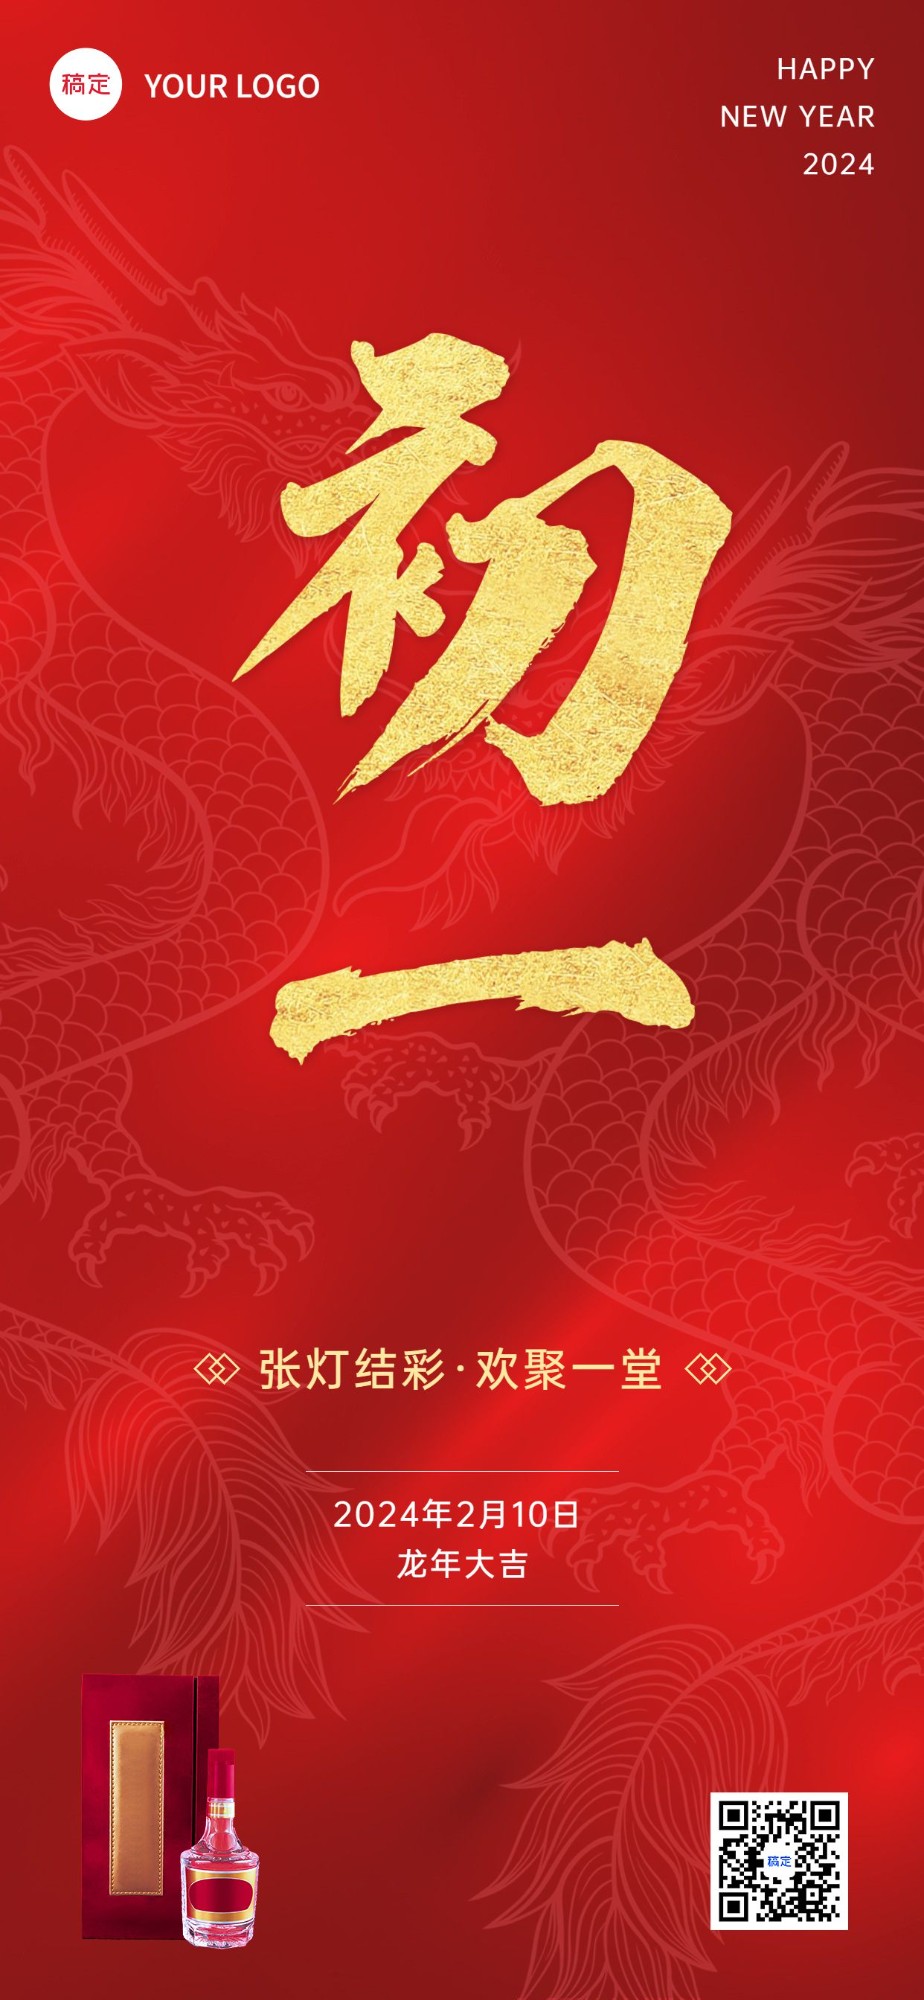 春节龙年初一节日祝福酒产品展示中式喜庆感全屏竖版海报预览效果